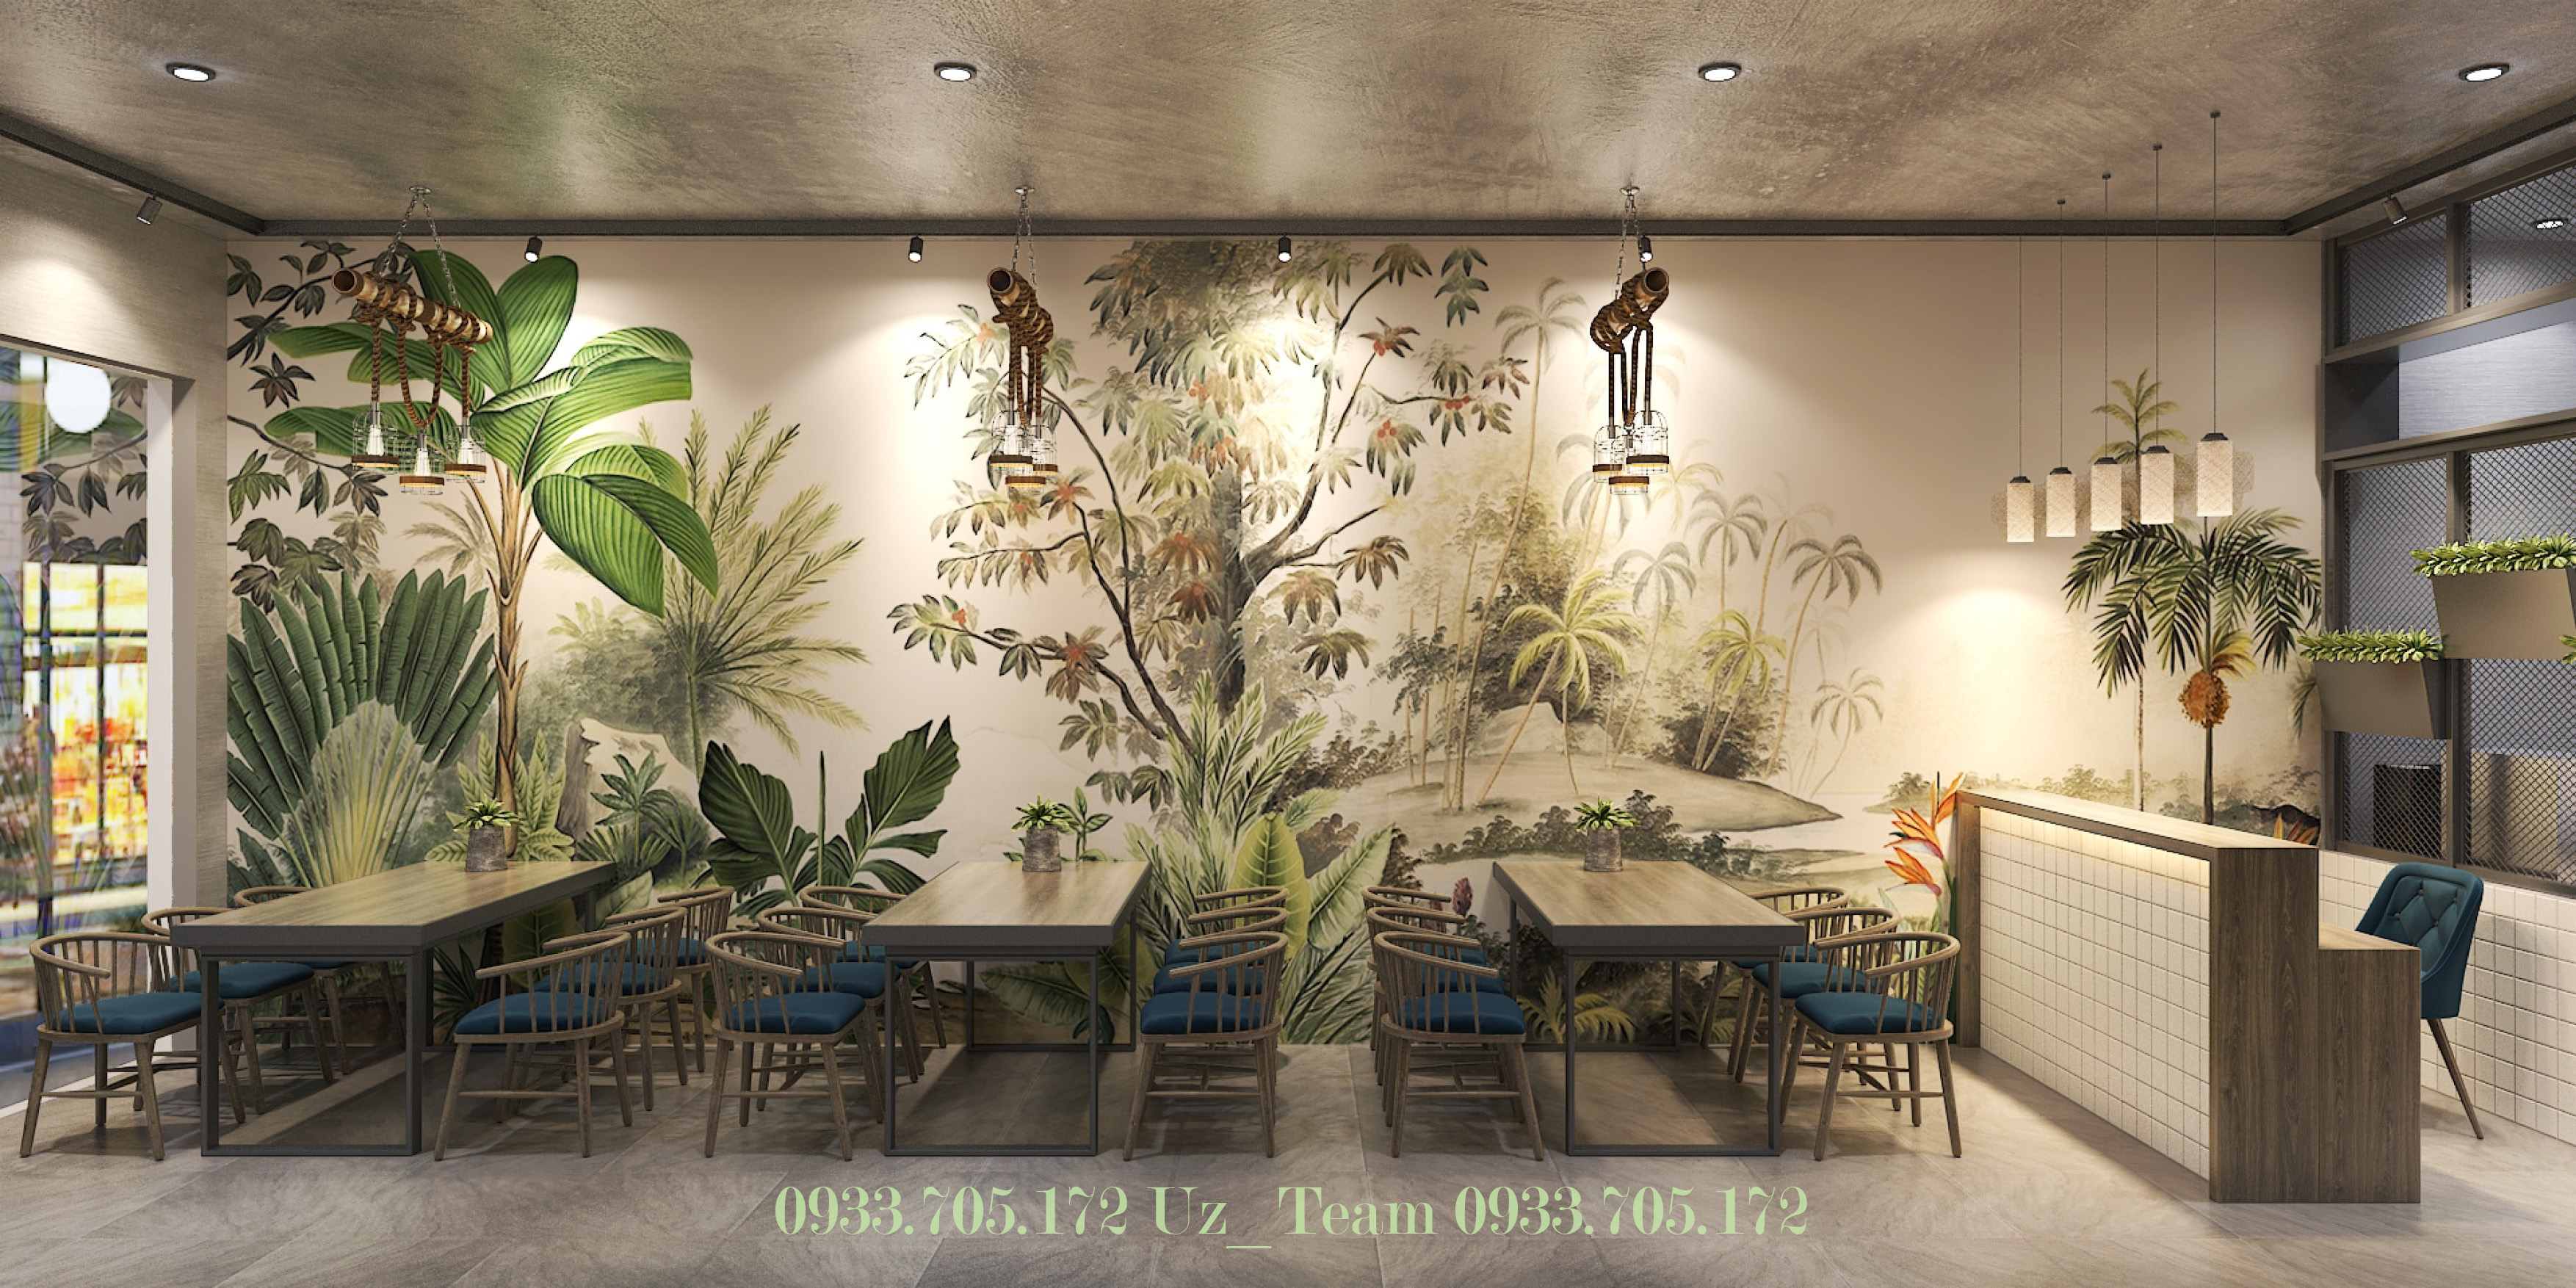 Thiết kế nội thất Cafe tại Hồ Chí Minh COFFEE HOÀNG VĨNH 1634052090 2